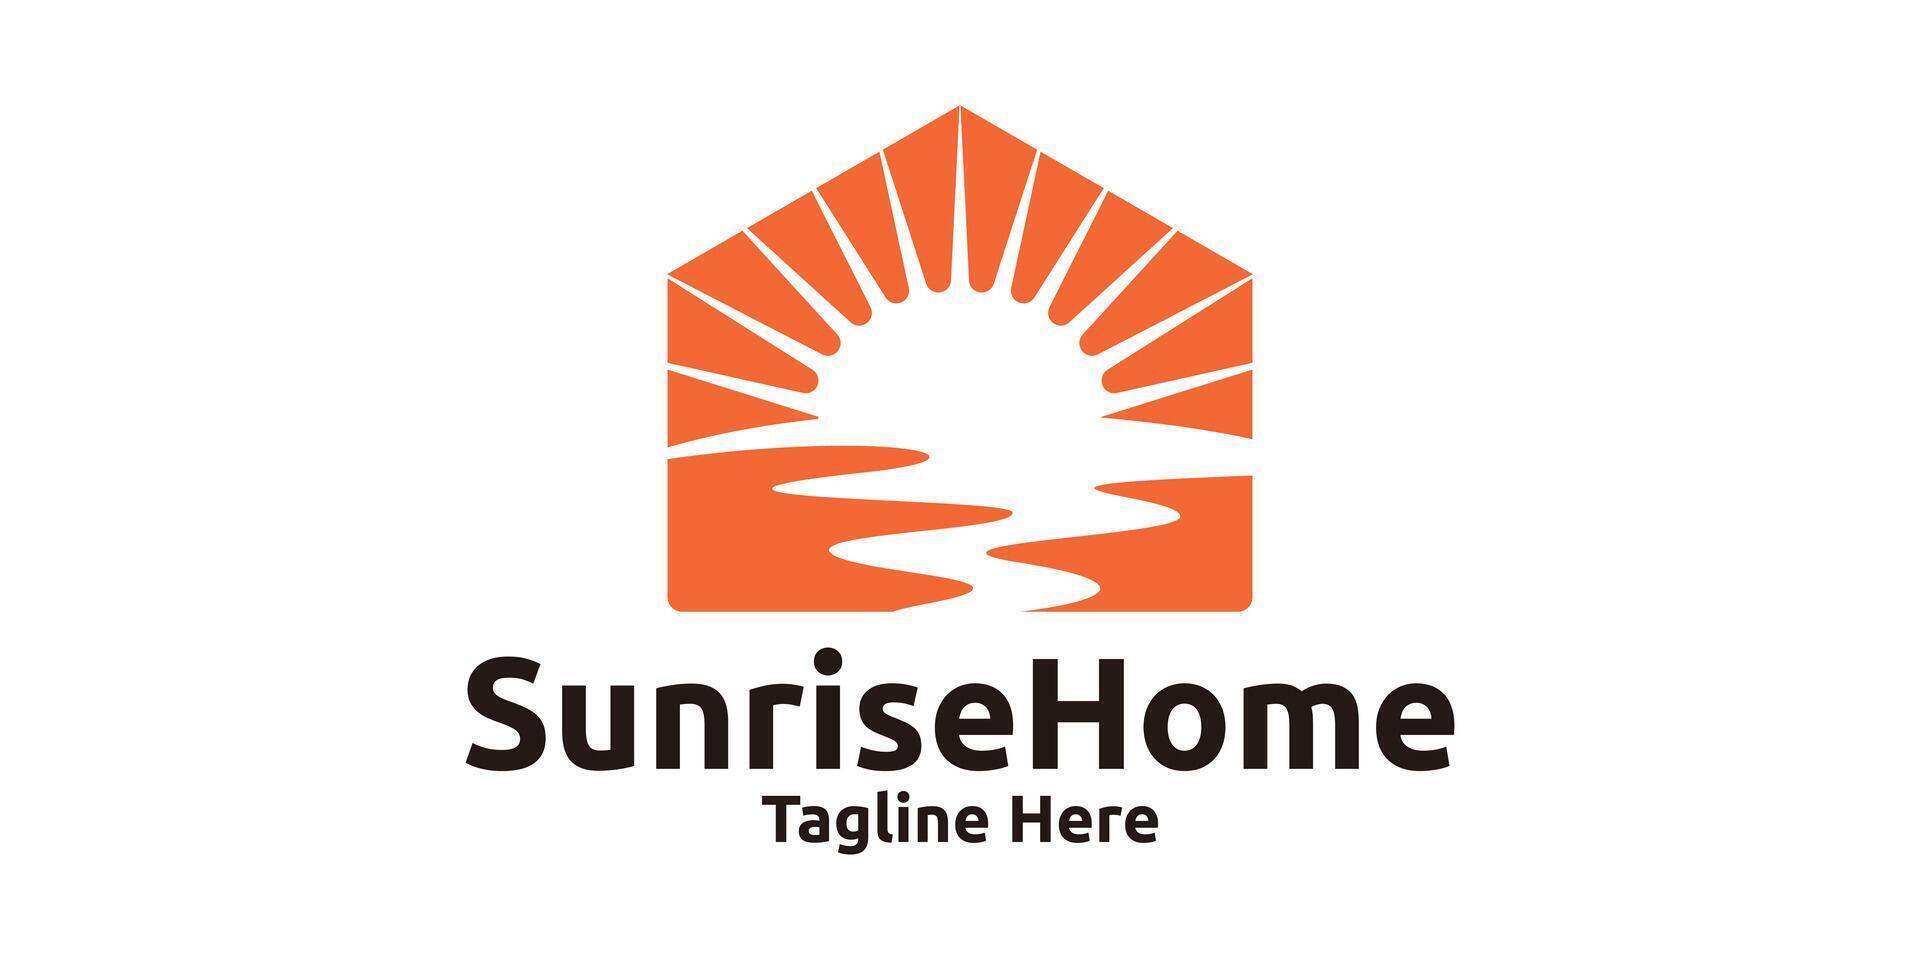 Logo Design kombinieren das gestalten von ein Haus mit ein Sonnenaufgang, Logo Design Vorlage, Symbol, kreativ Idee. vektor